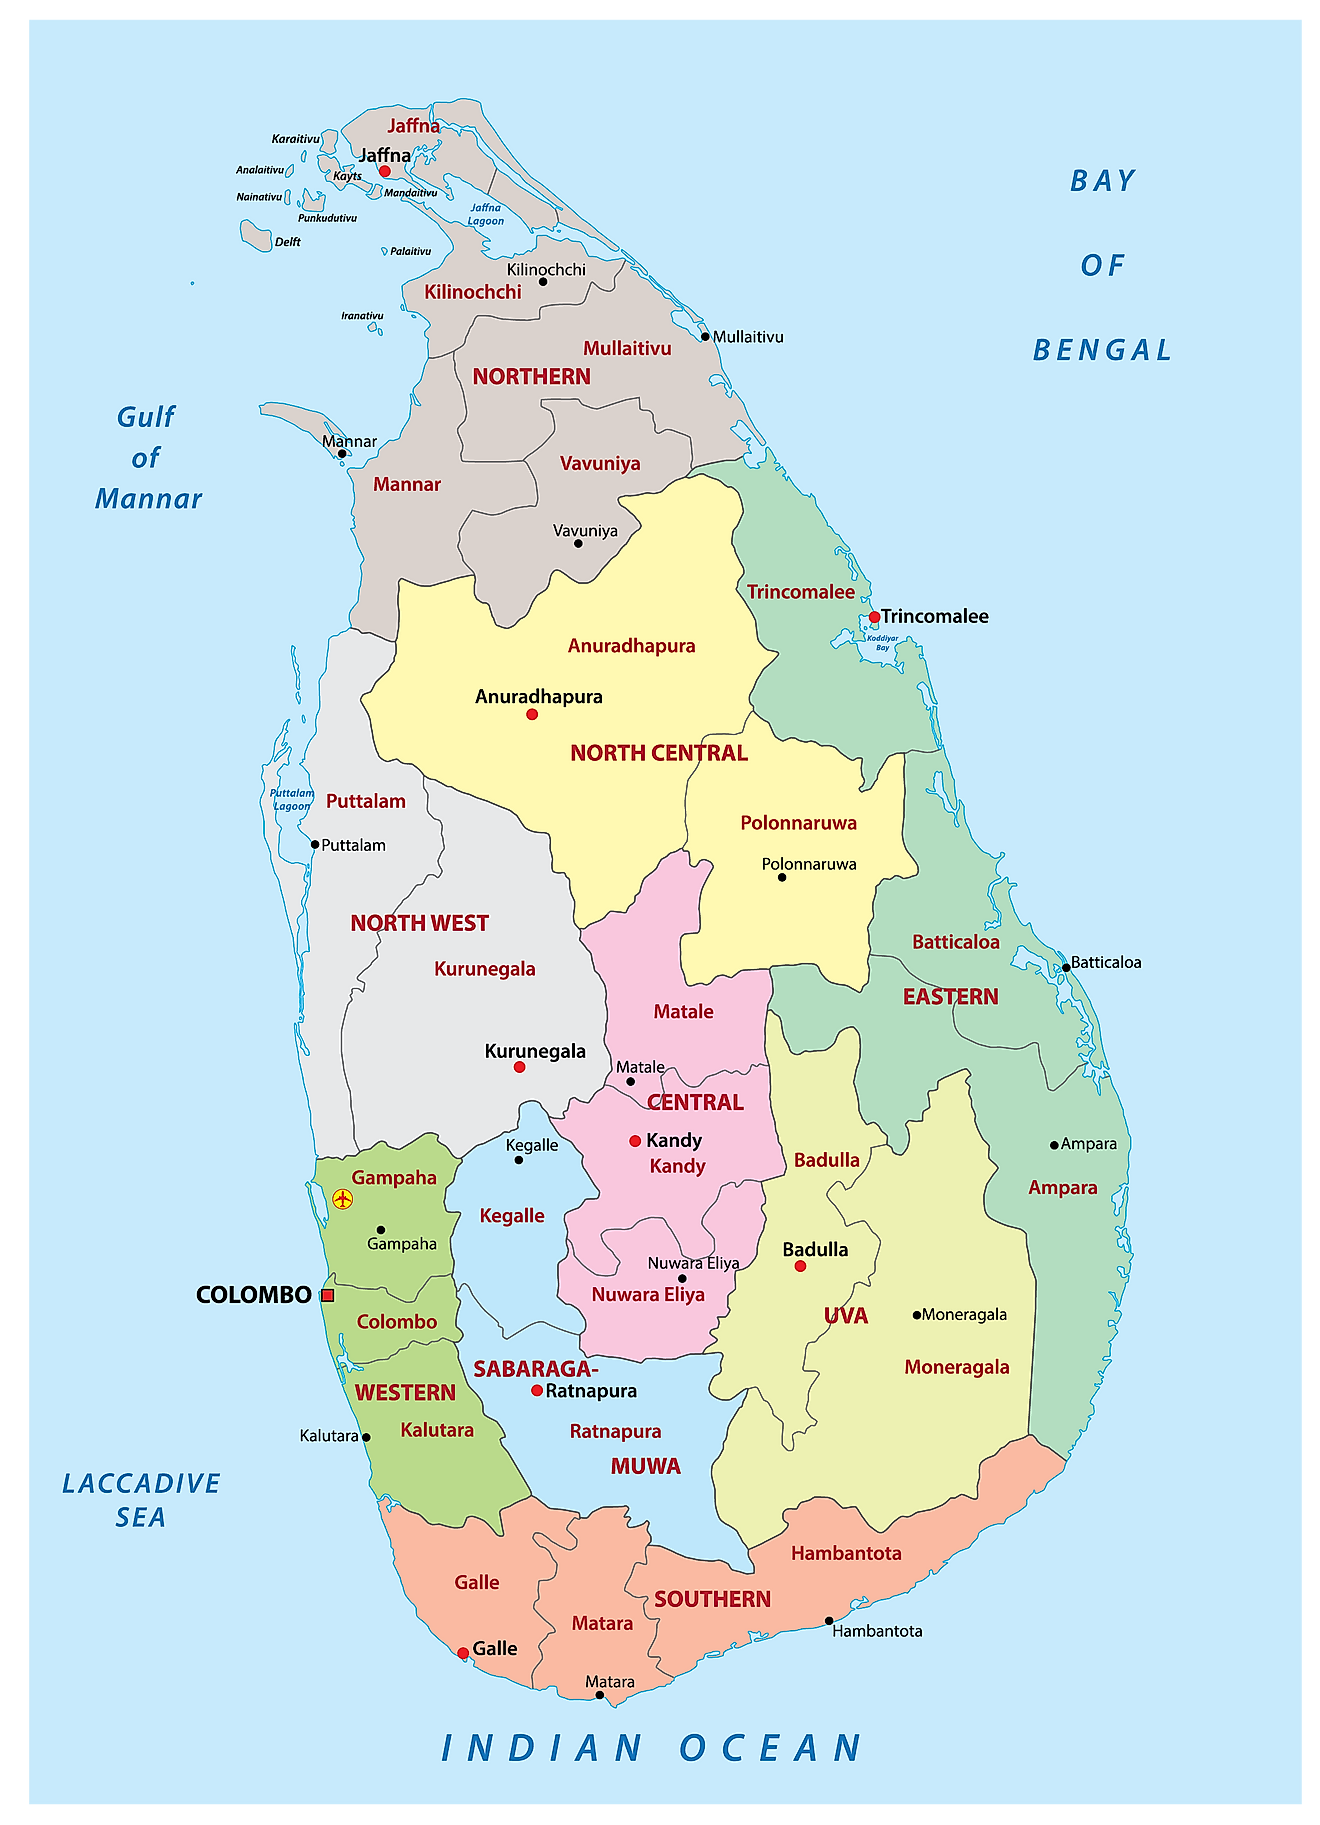 Large Detailed Administrative Map Of Sri Lanka Sri Lanka Large Images